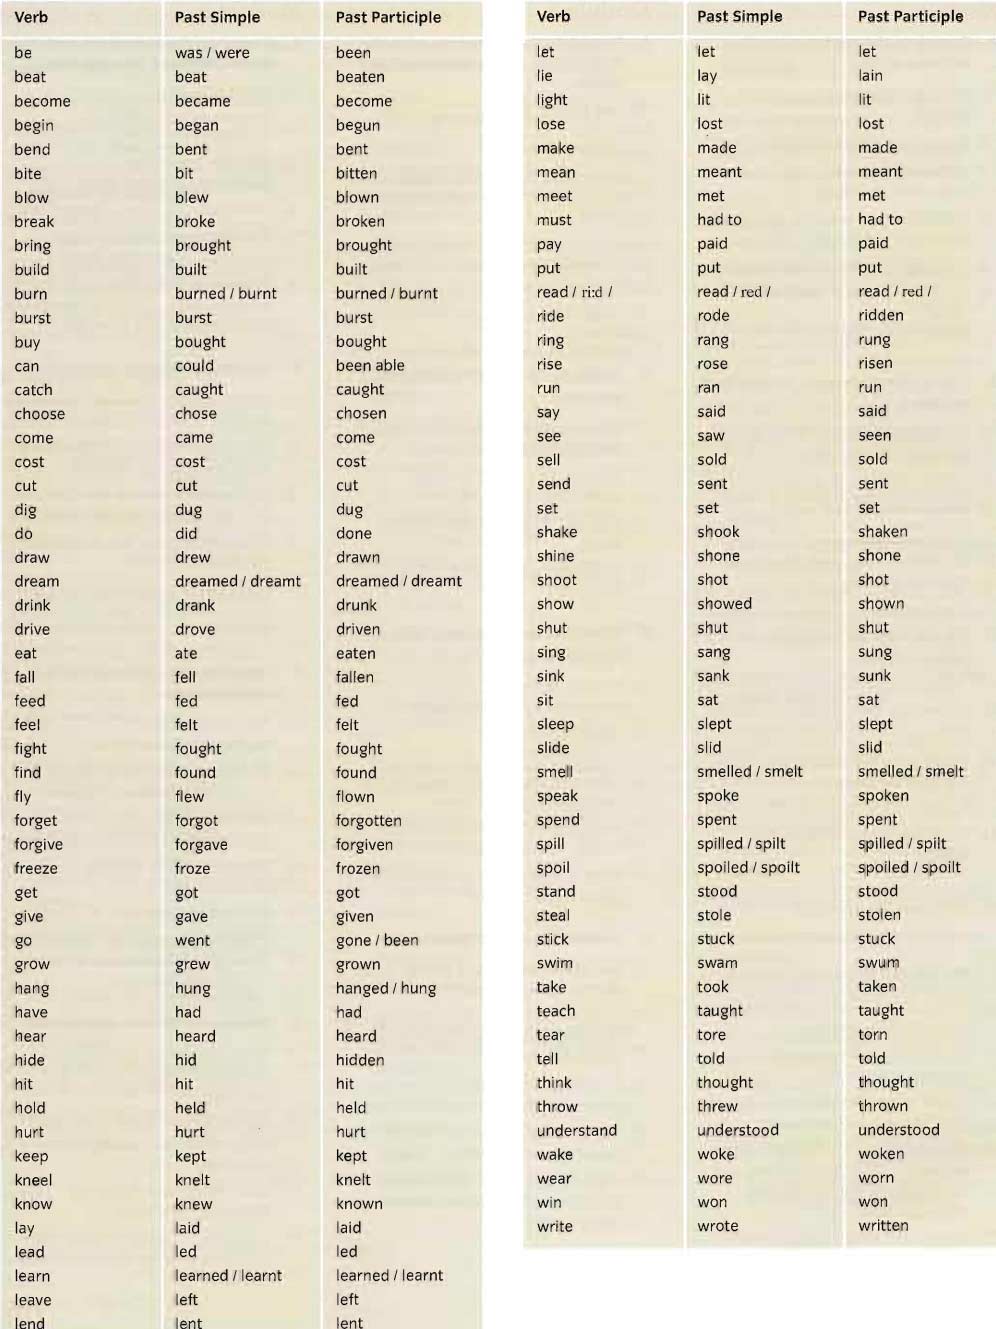 Таблица неправильных глаголов в английском языке с